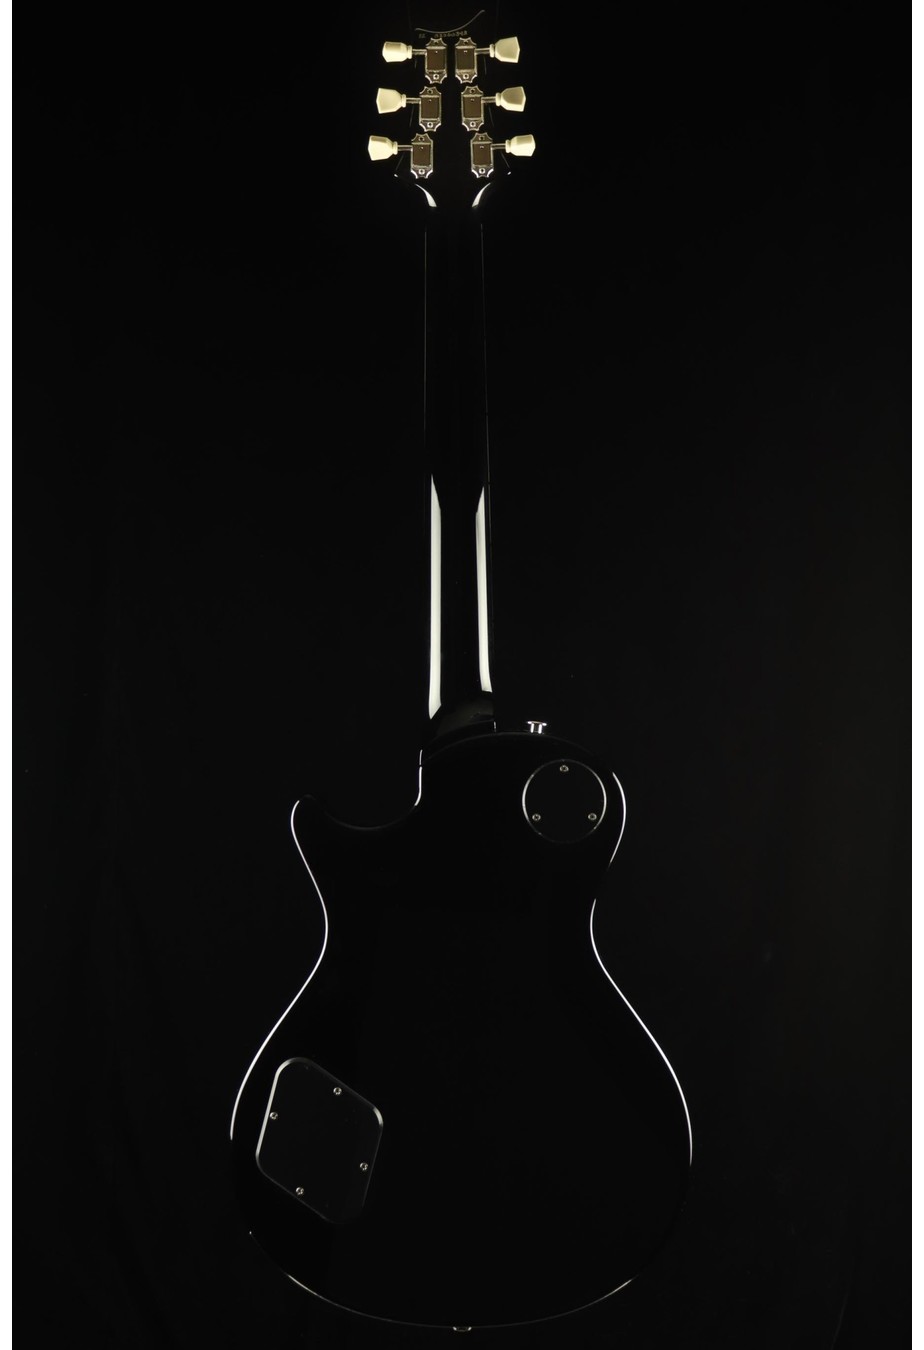 PRS Guitars PRS S2 McCarty 594 Singlecut - Black